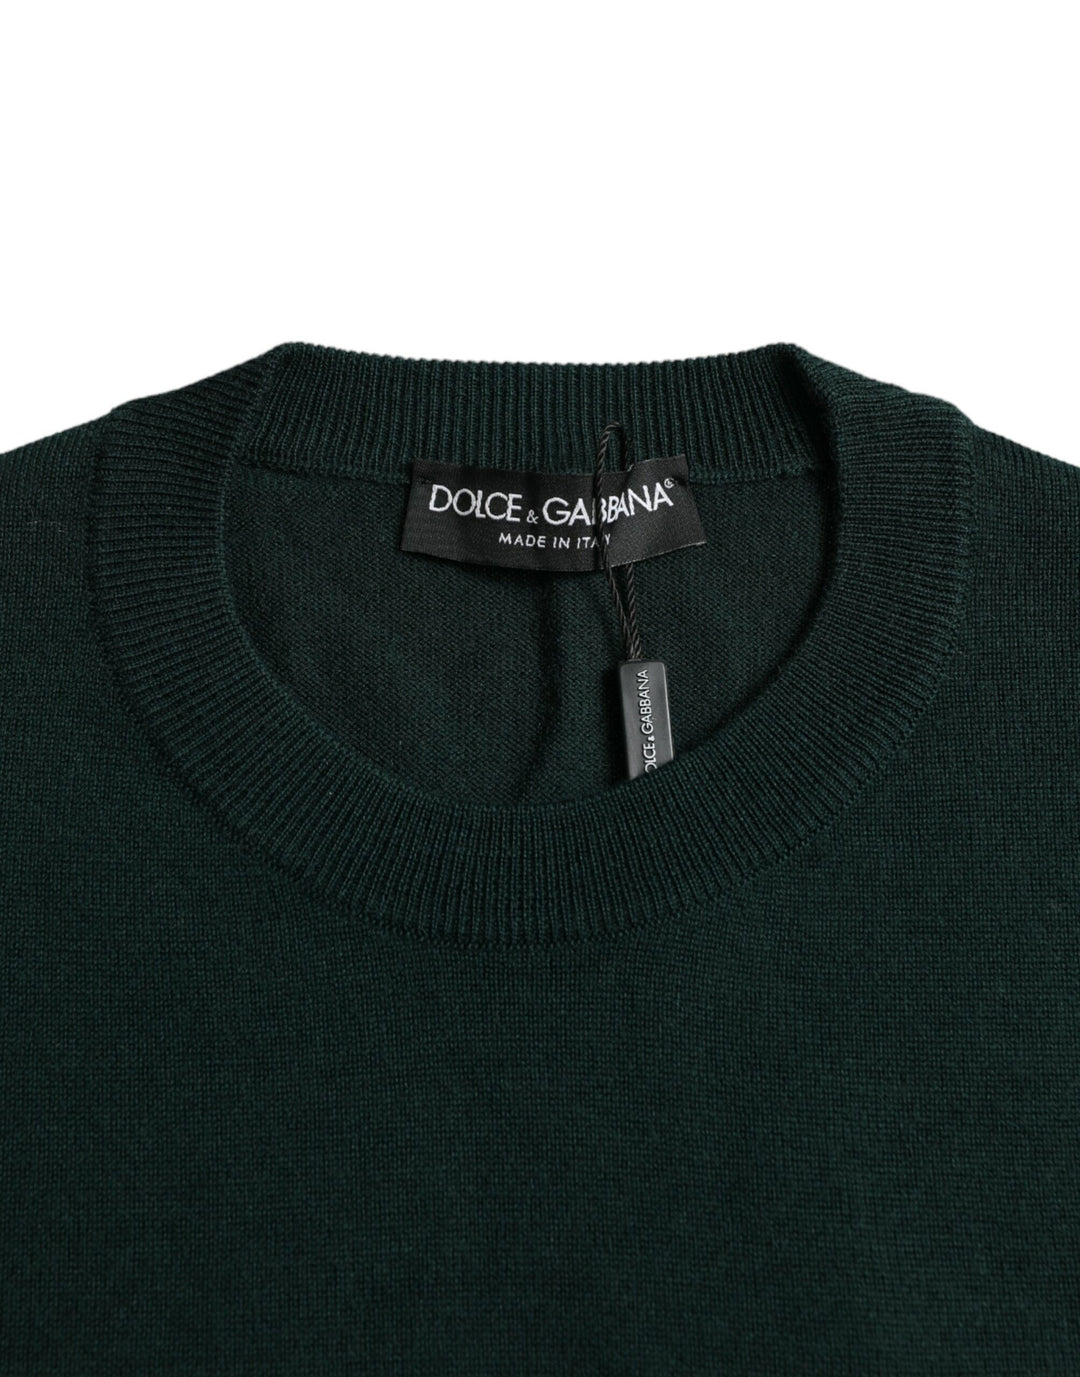 Dolce & Gabbana Dark Green Crown Crew Neck Pullover Sweater